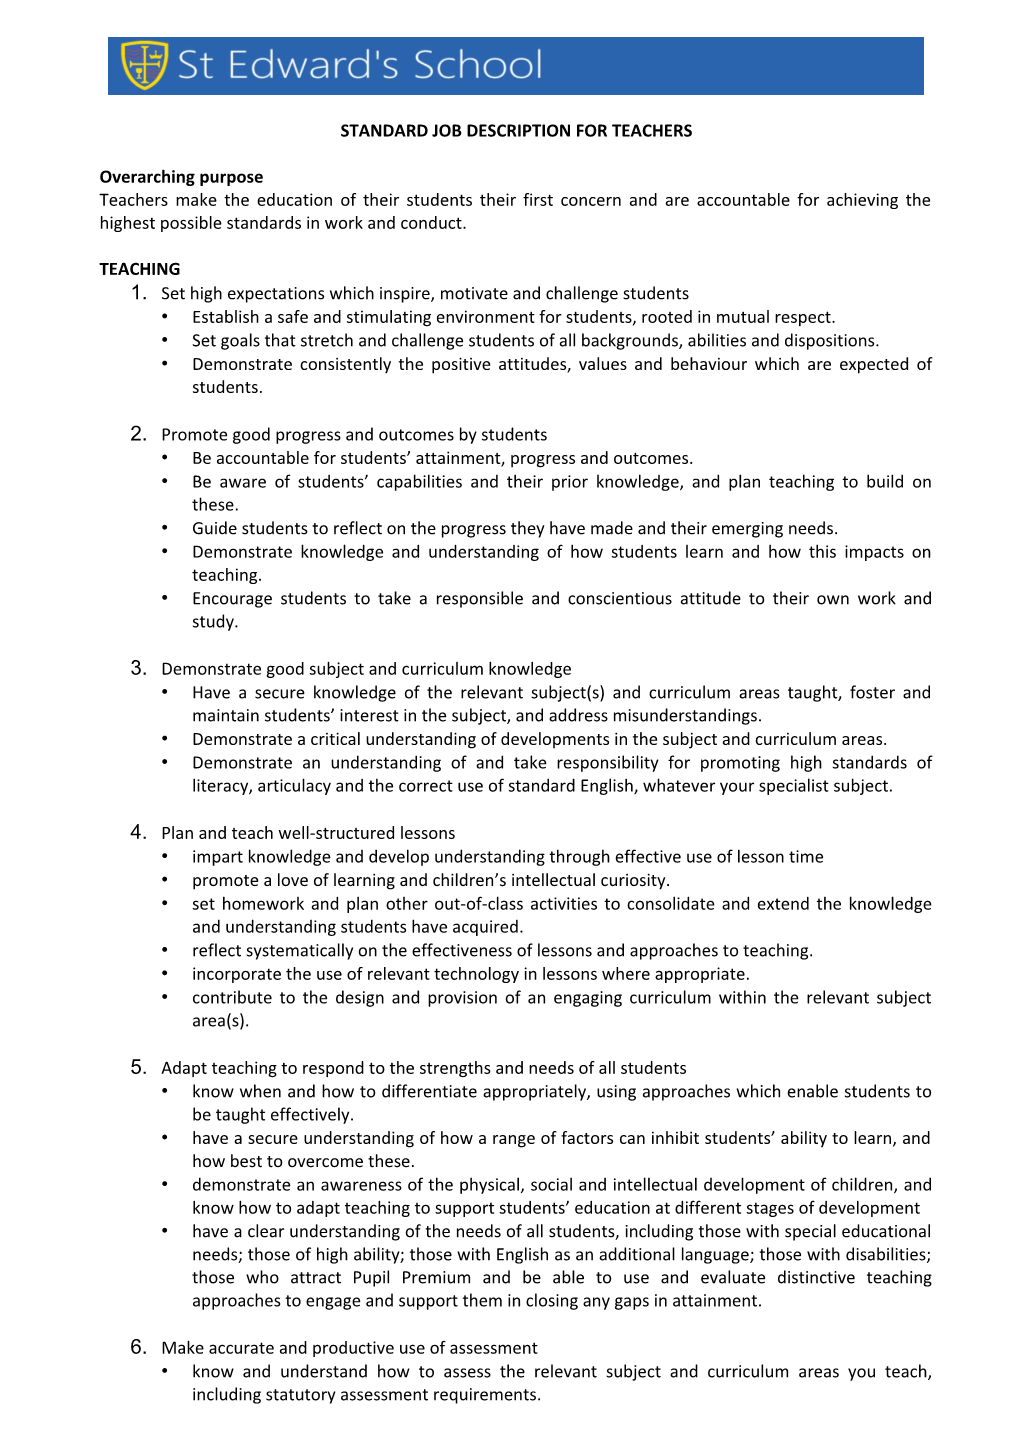 Standard Job Description for Teachers